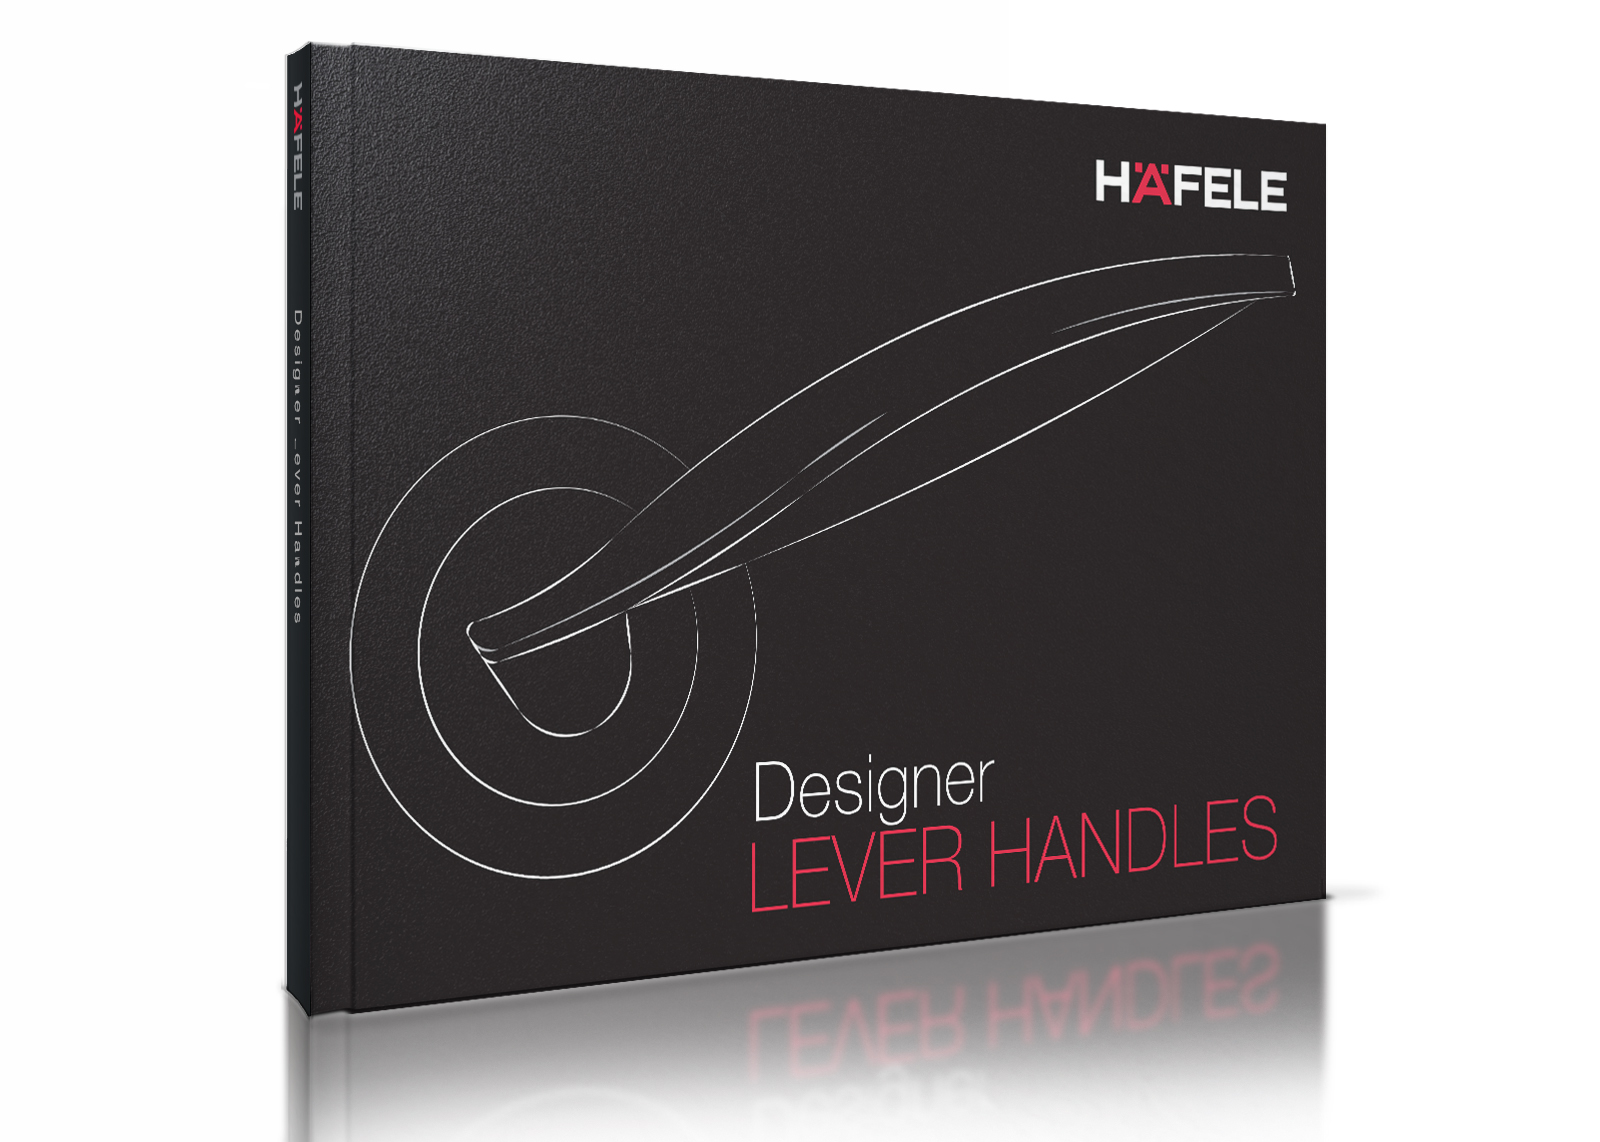 Häfele's Designer Lever Handles Brochure